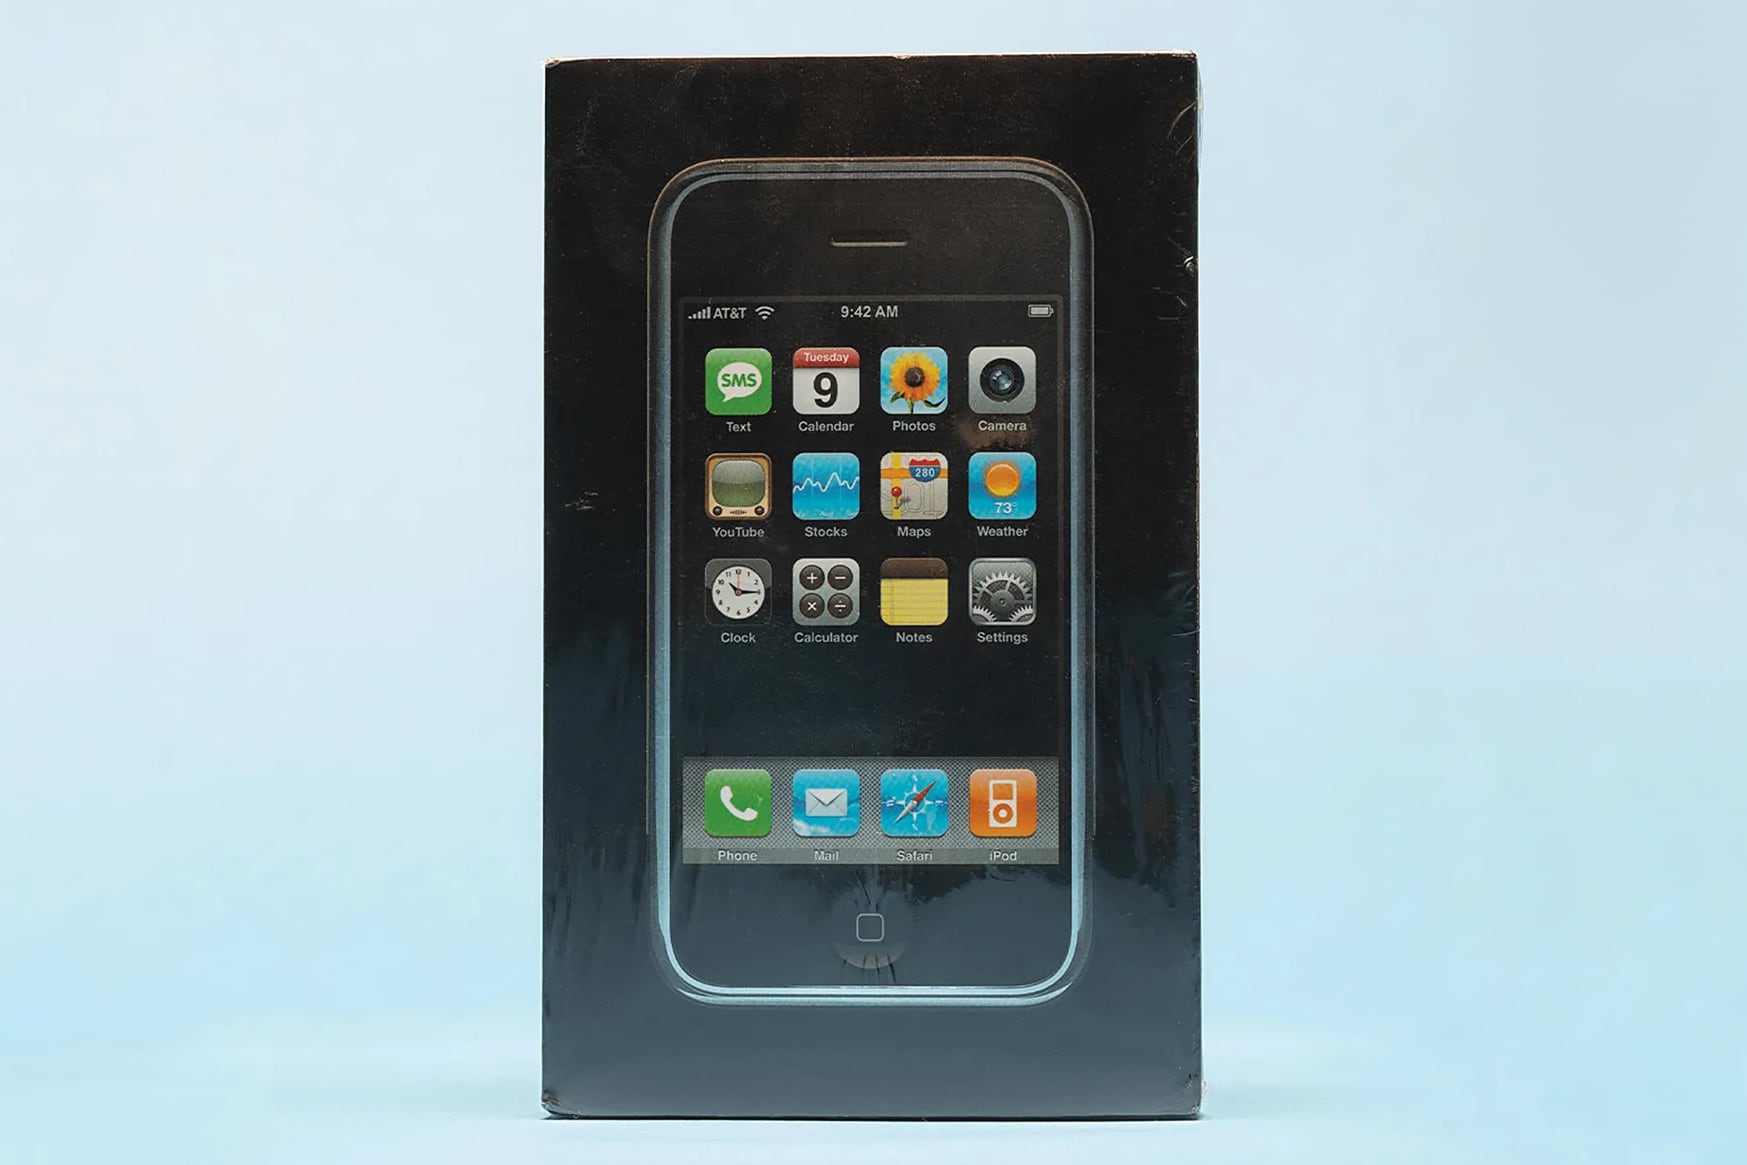 Первый iPhone в запечатанной упаковке продали на аукционе за $35 тысяч